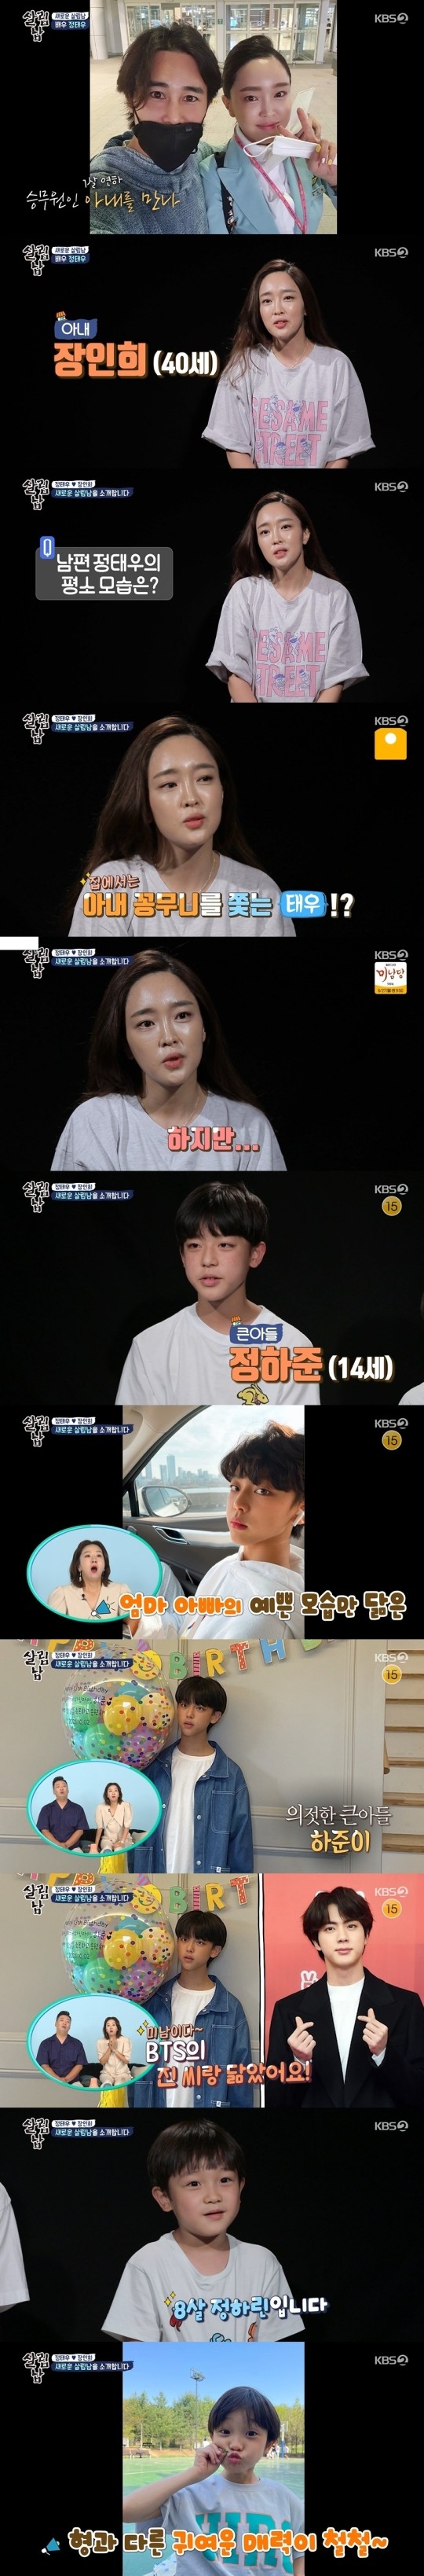 KBS 2TV ‘살림하는 남자들 시즌2’ 캡처.